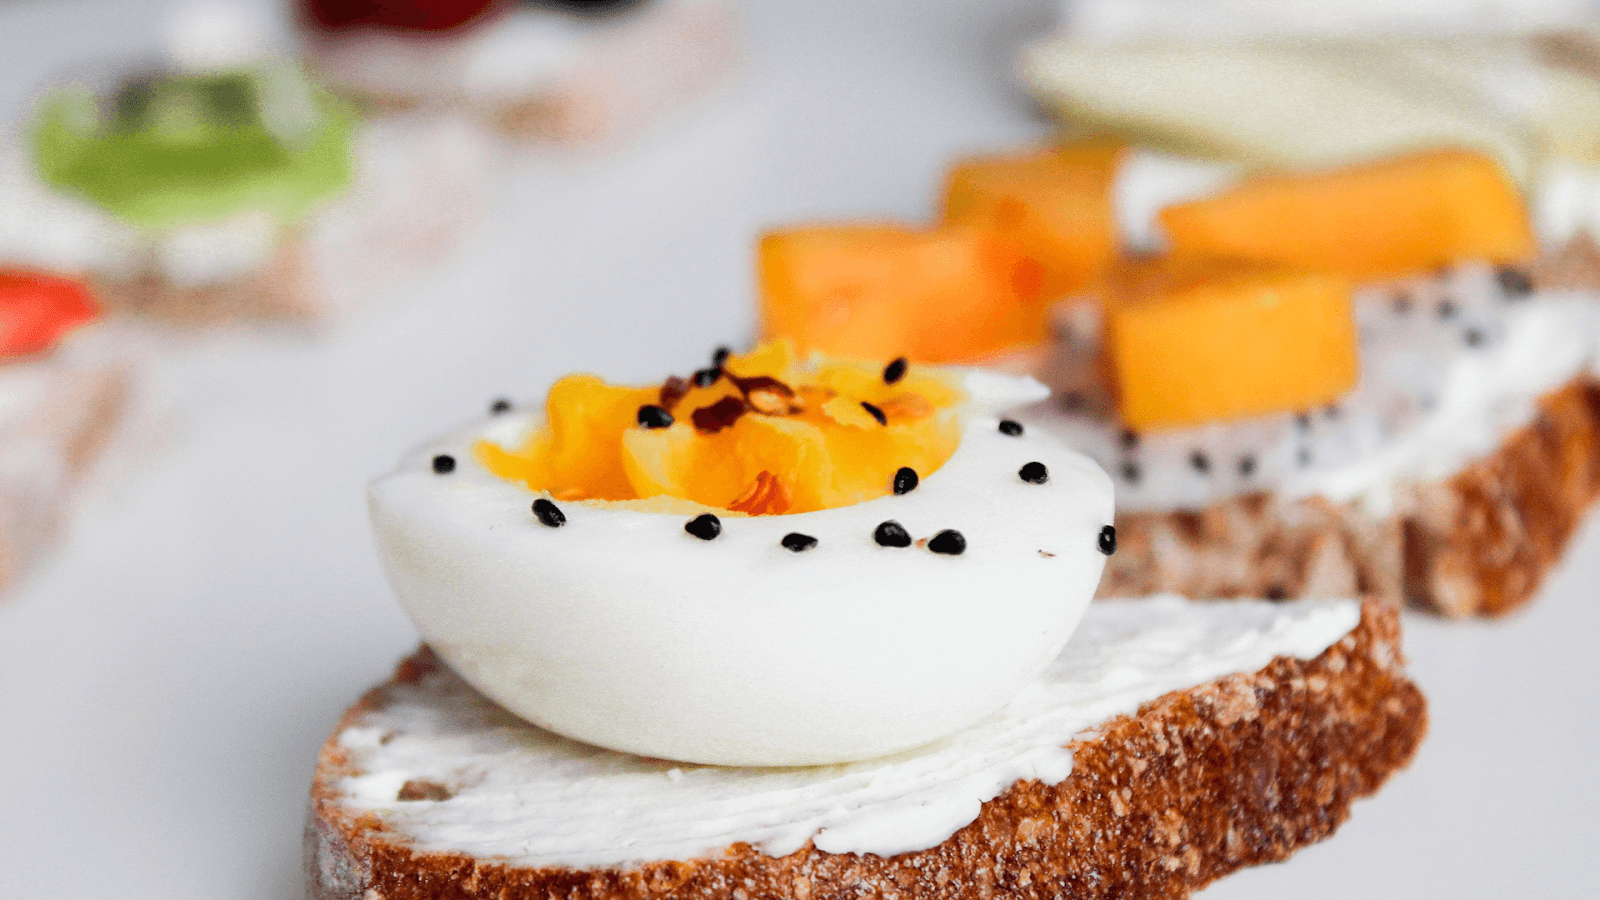 Trứng là một trong những món ăn trong thực đơn giảm cân cấp tốc hiệu quả